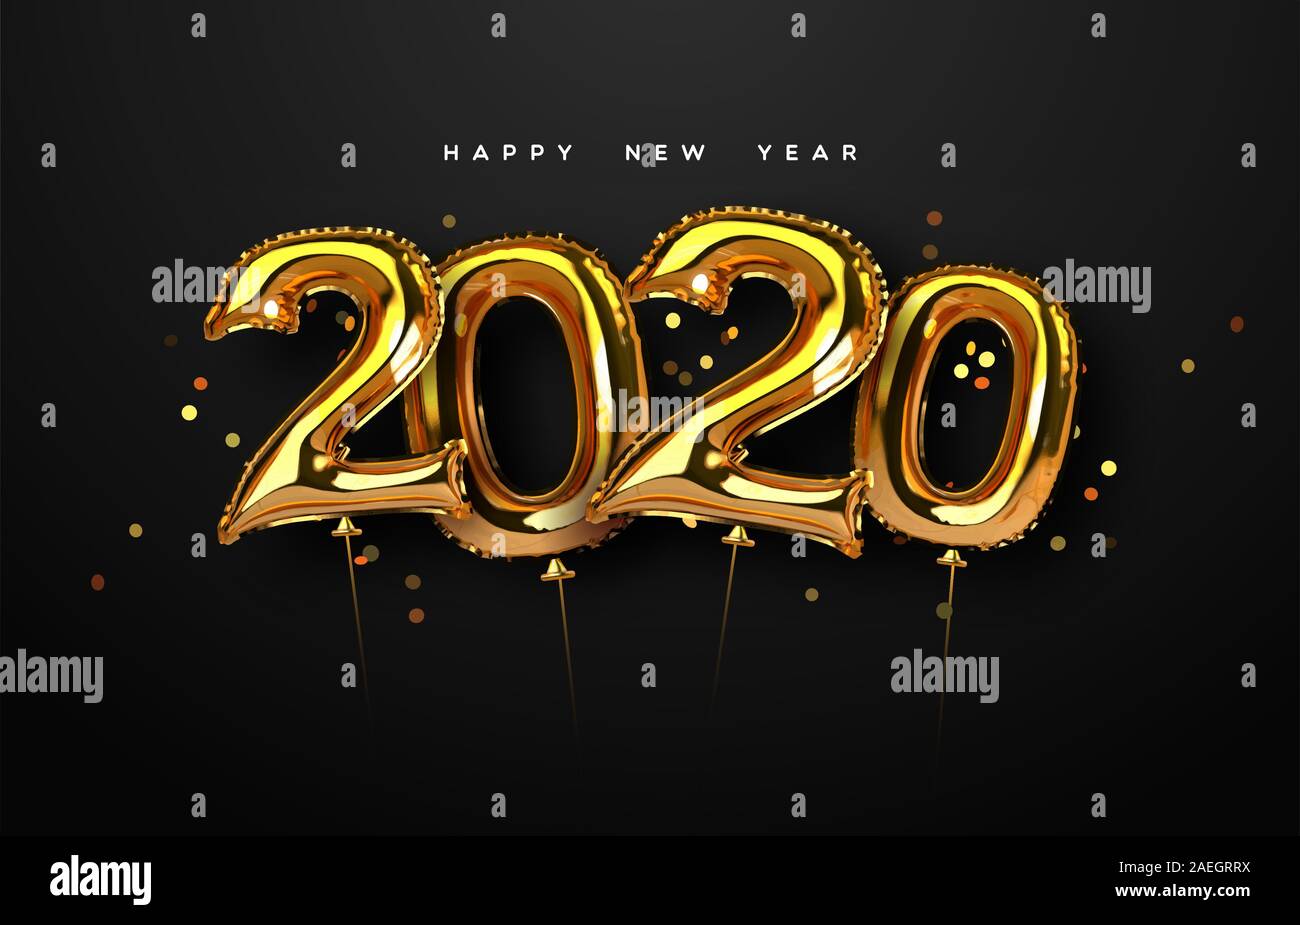 Frohes Neues Jahr 2020 Grußkarte, 3D gold Folie ballon Kalender Anzahl in Luxus Gold Farbe mit Party Konfetti für Urlaub Einladung zur Veranstaltung oder seaso Stock Vektor